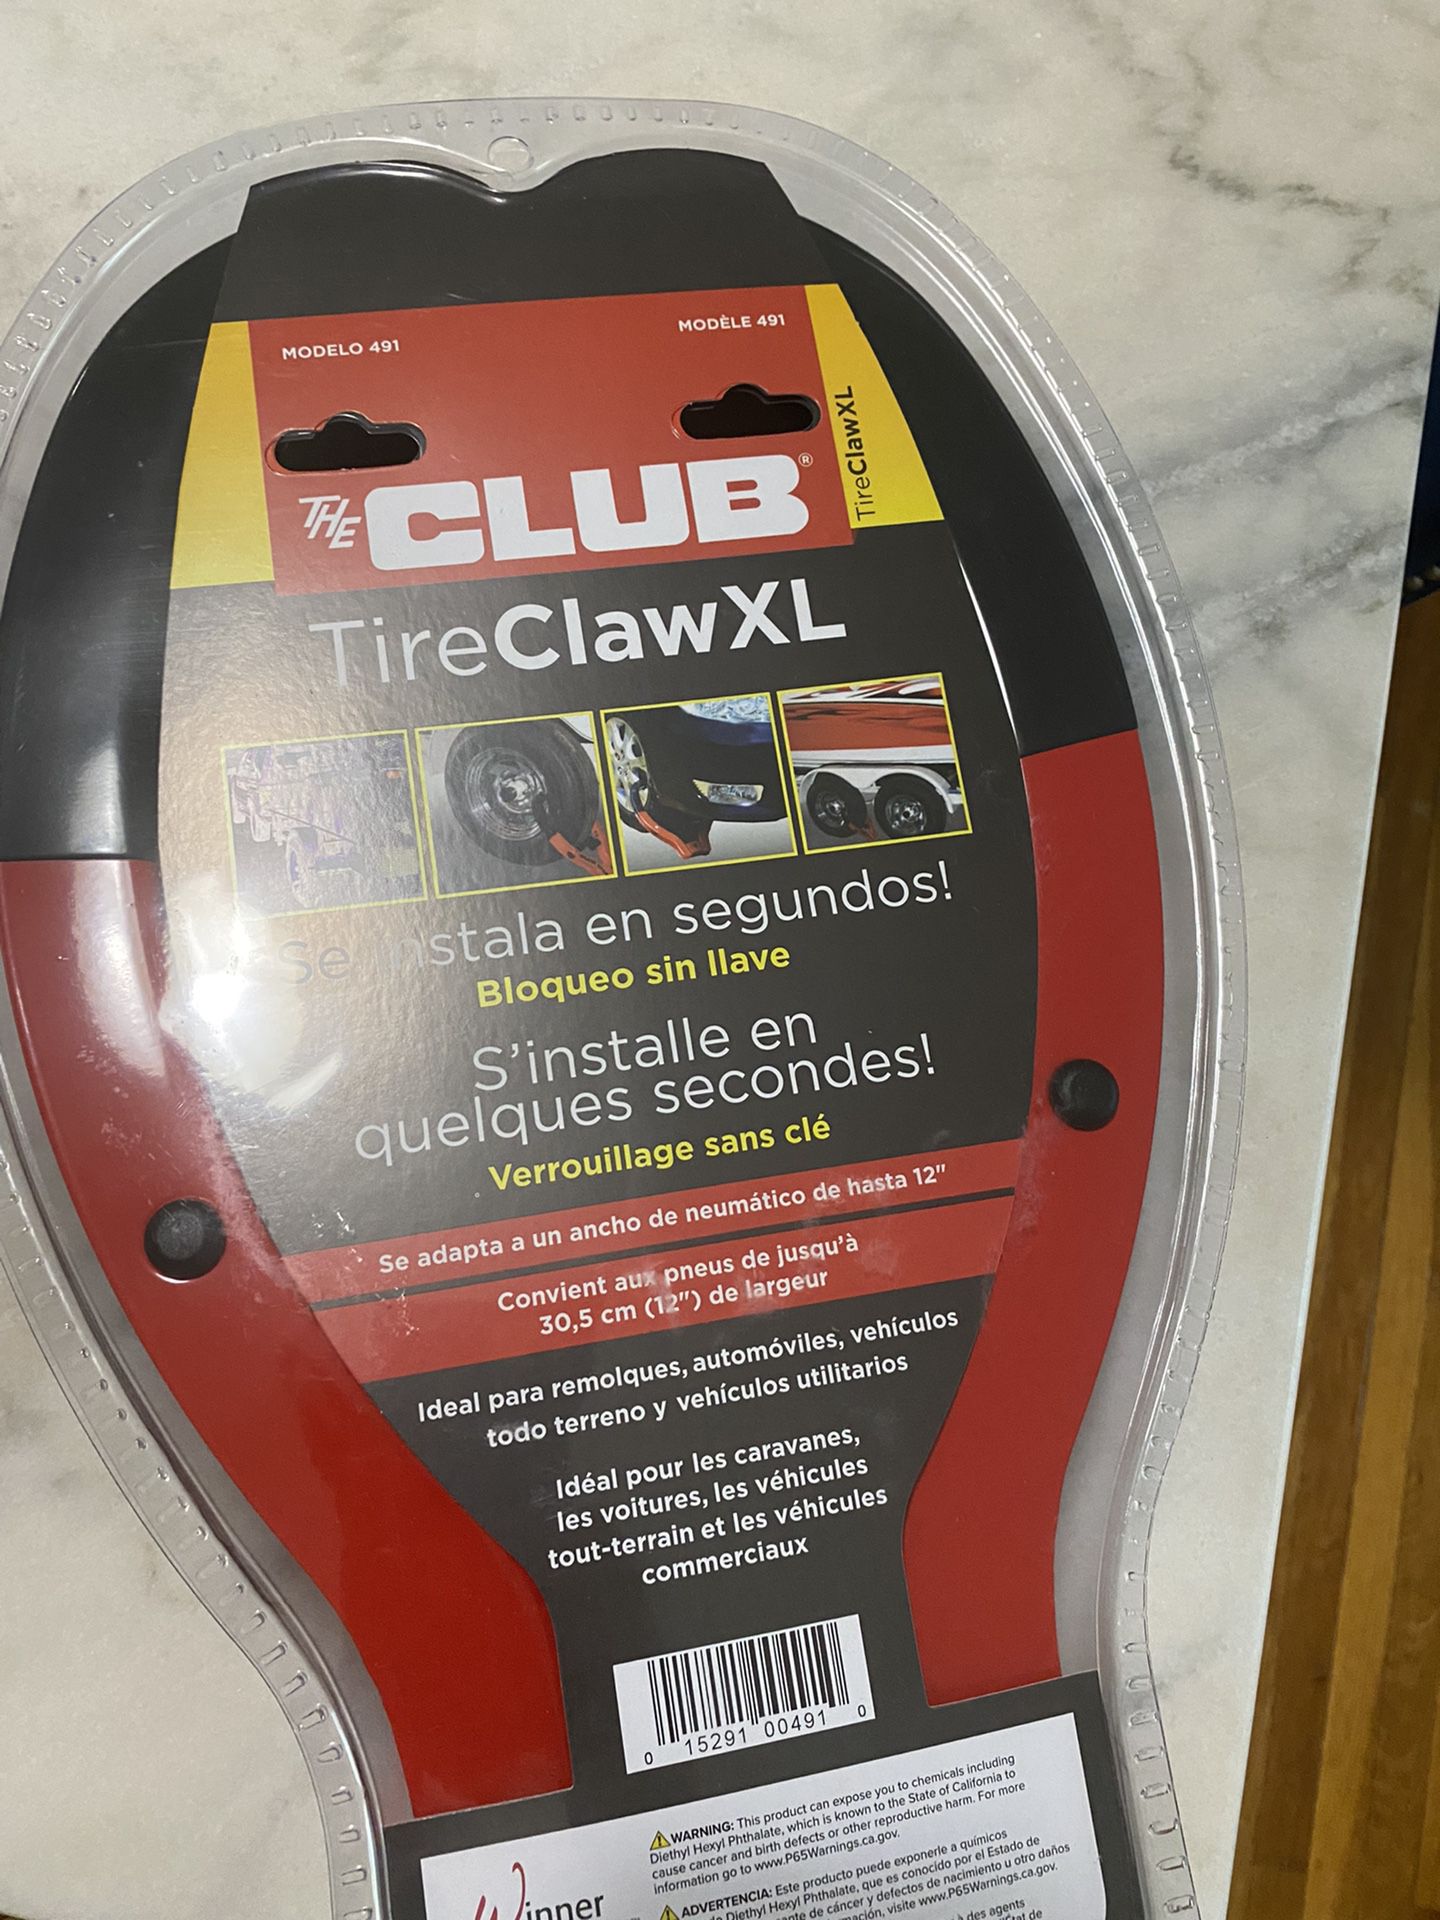 The Club Tire Claw XL 